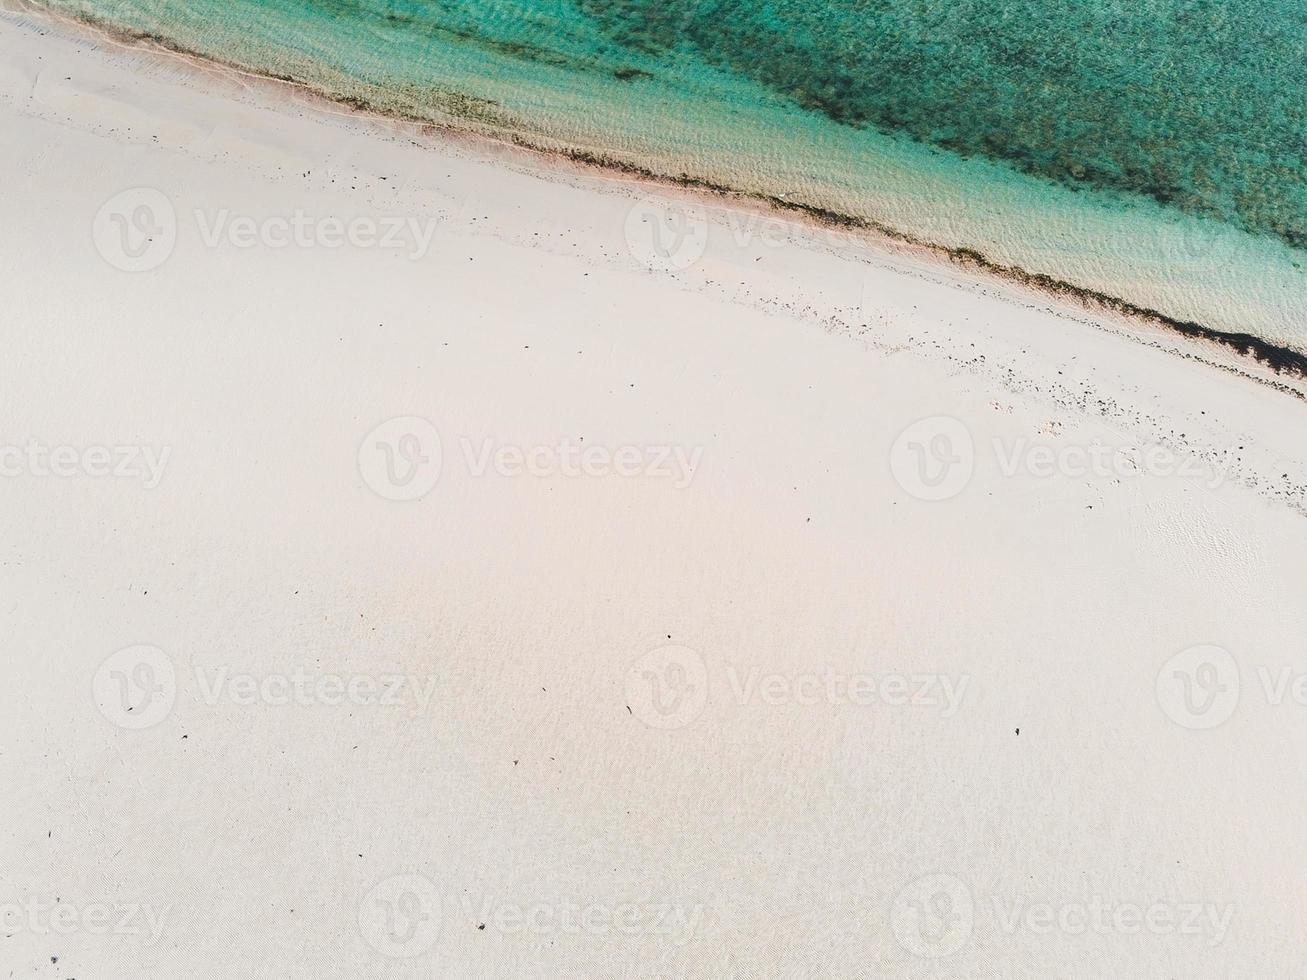 Muyuni Beach, Zanzibar Island, Tanzania foto